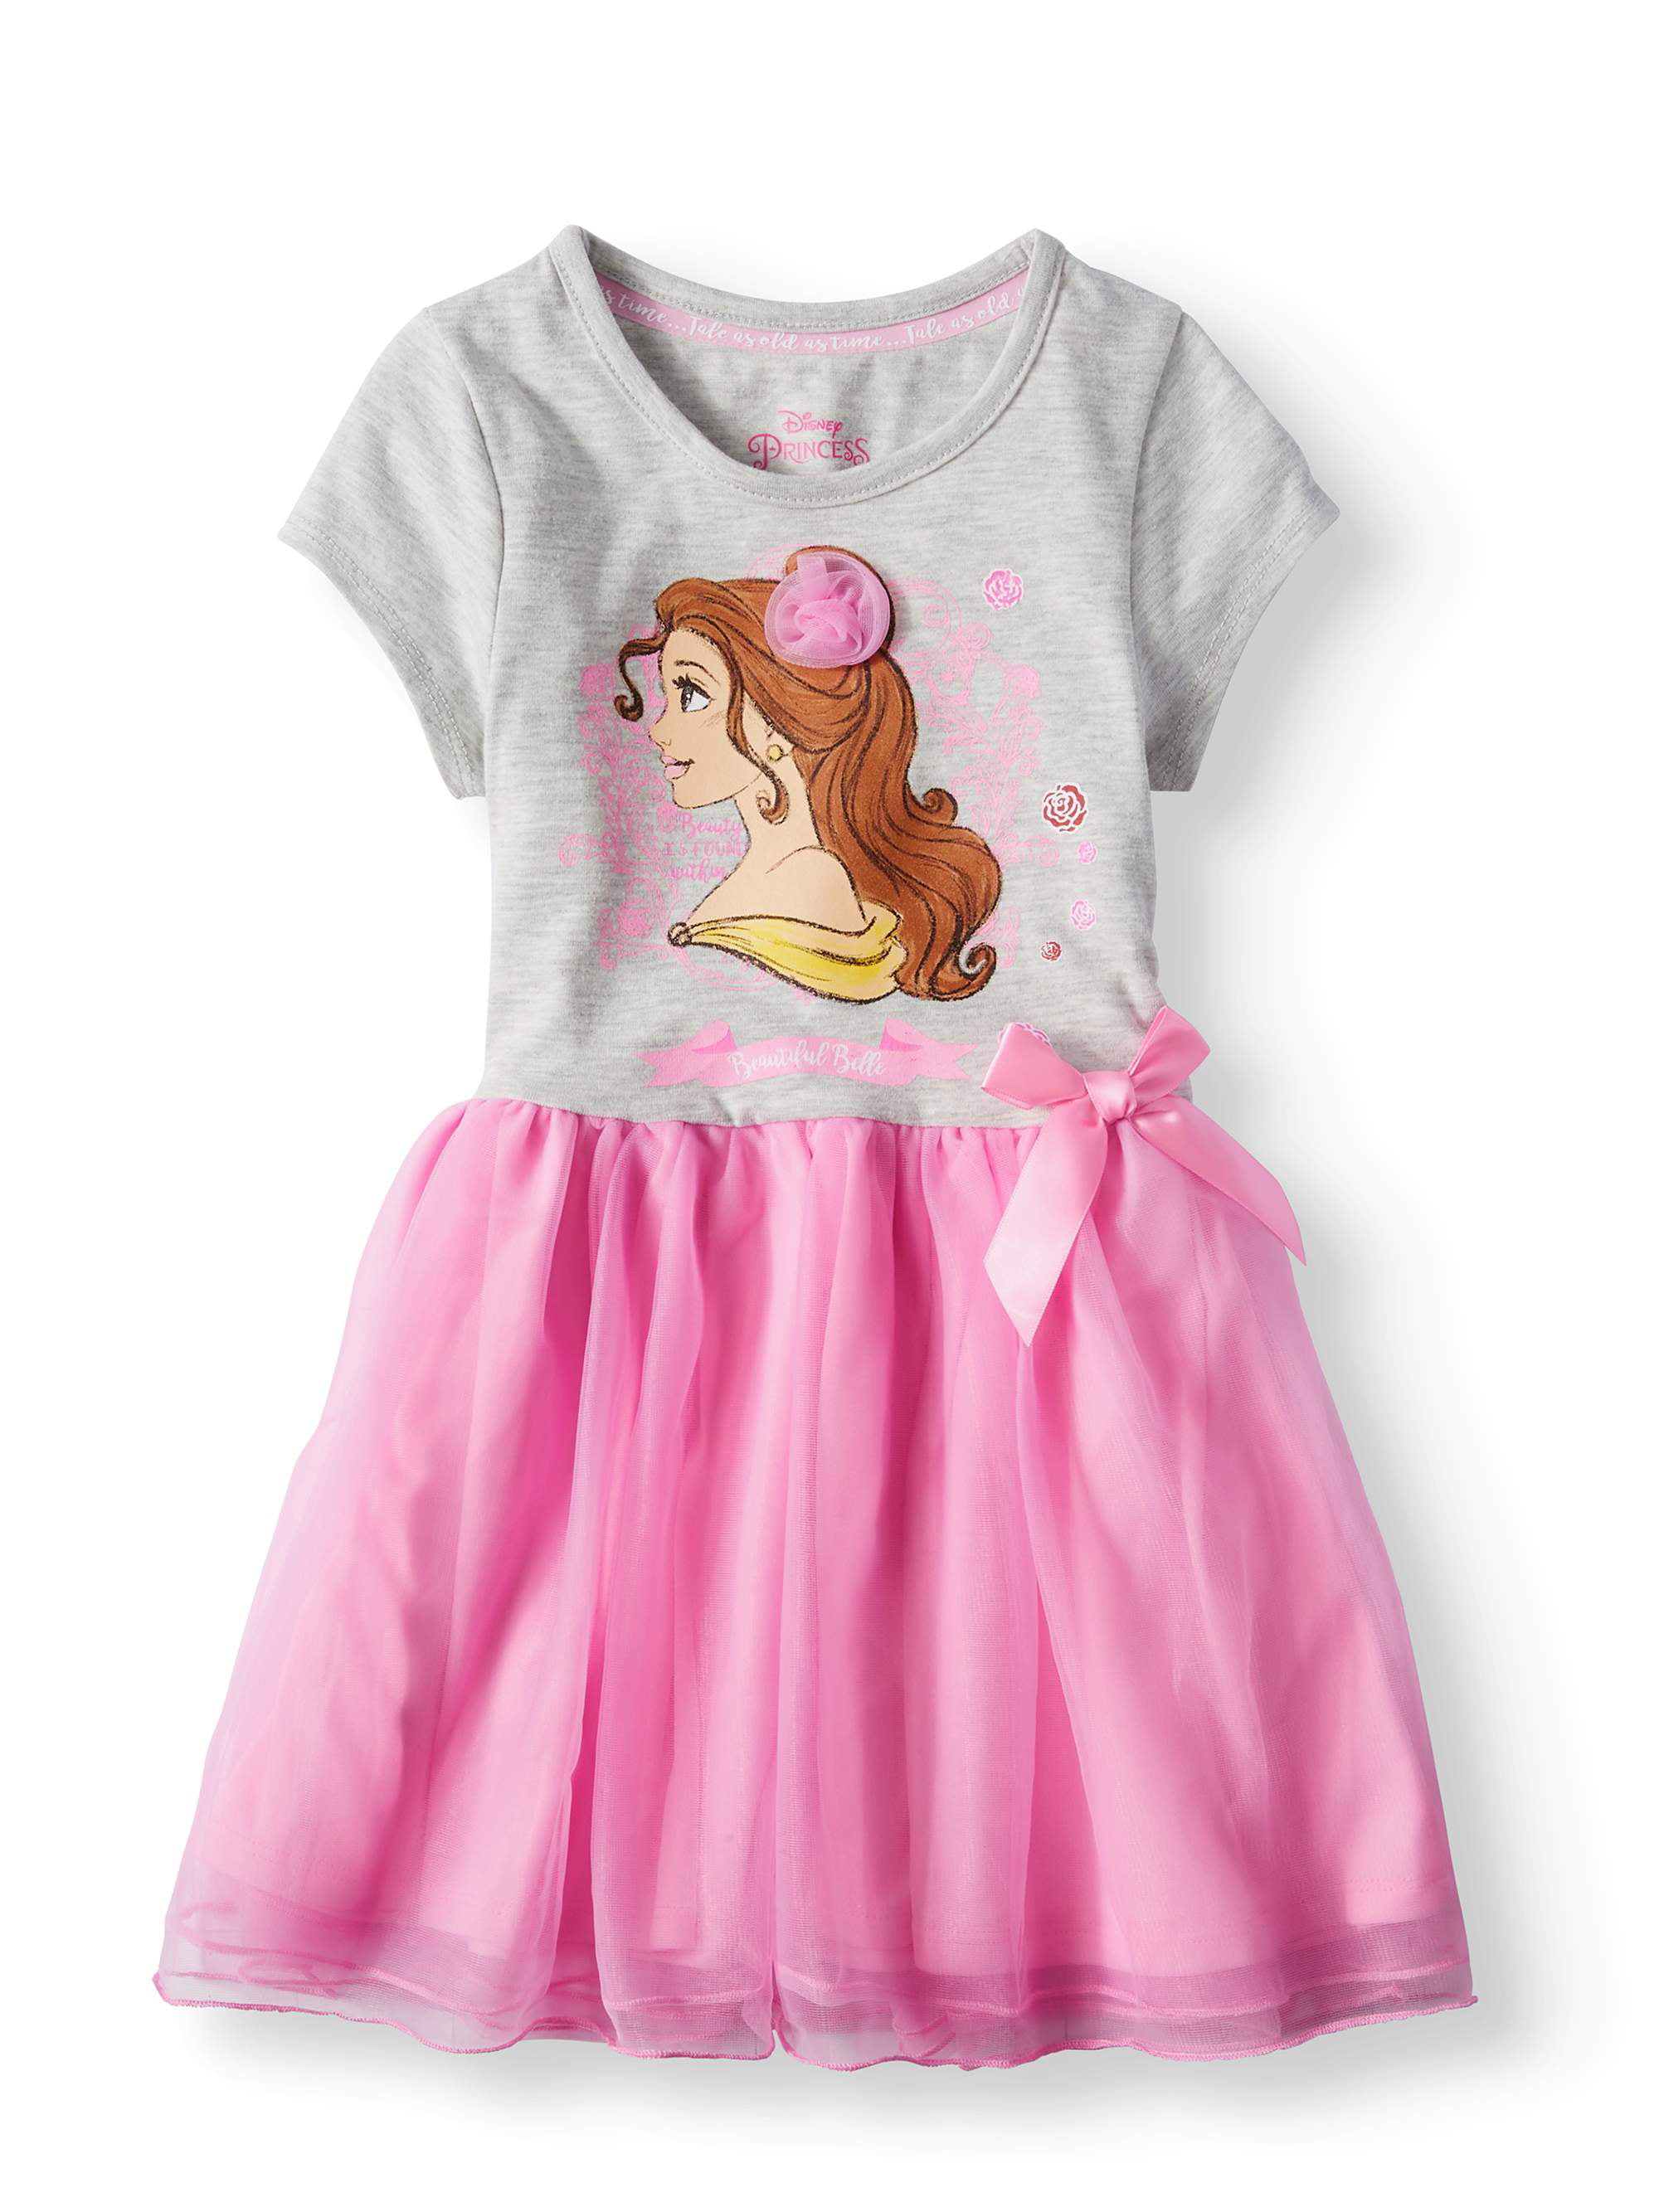 Belle Short Sleeve Tutu Dress (Little Girls) - Walmart.com